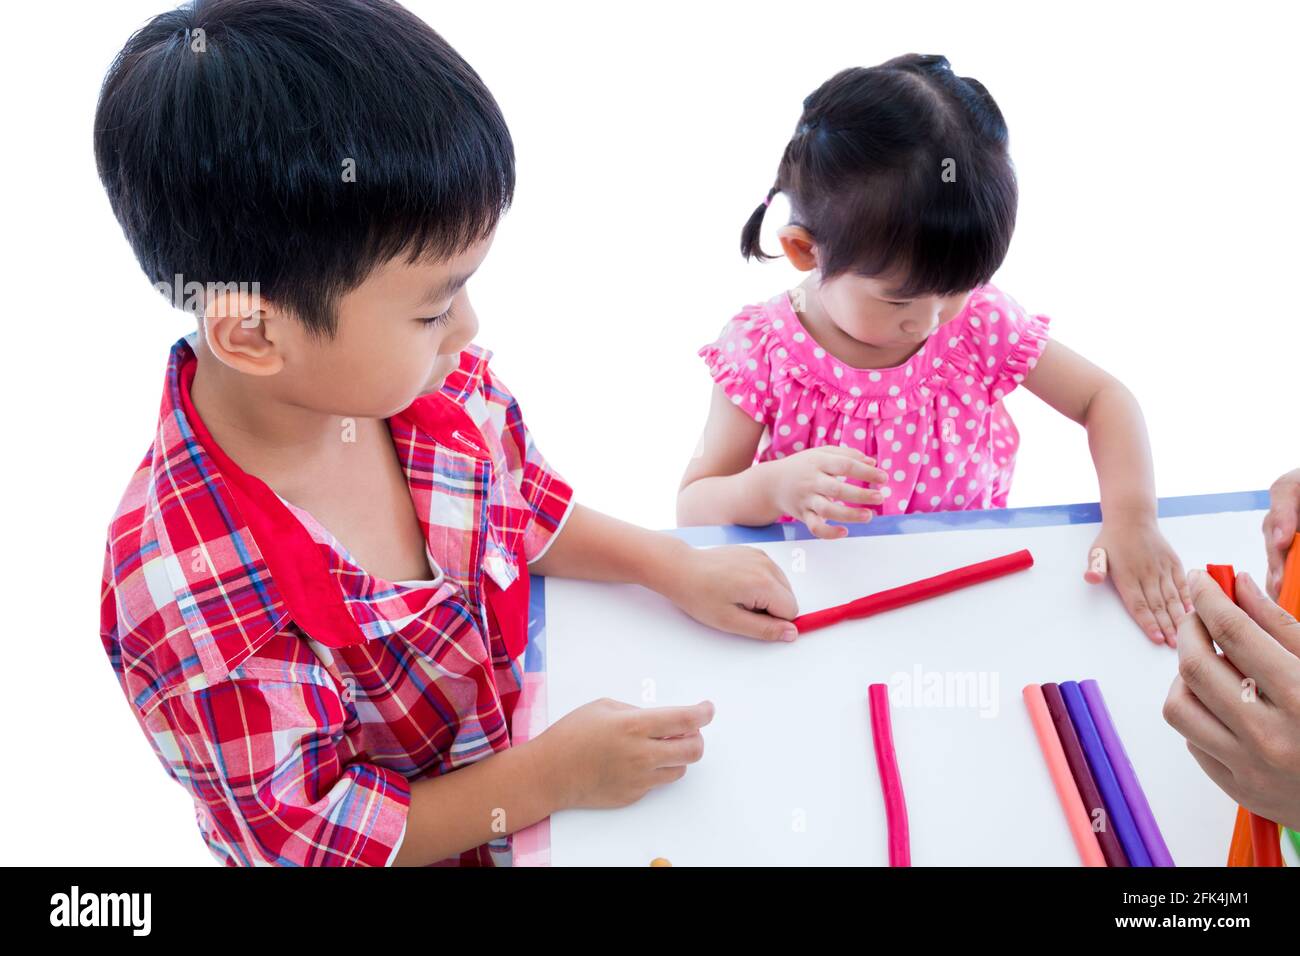 Kleine asiatische Kinder spielen und erstellen Spielzeug aus Spielteig auf dem Tisch, auf weißem Hintergrund. Stärken Sie die Phantasie des Kindes Stockfoto